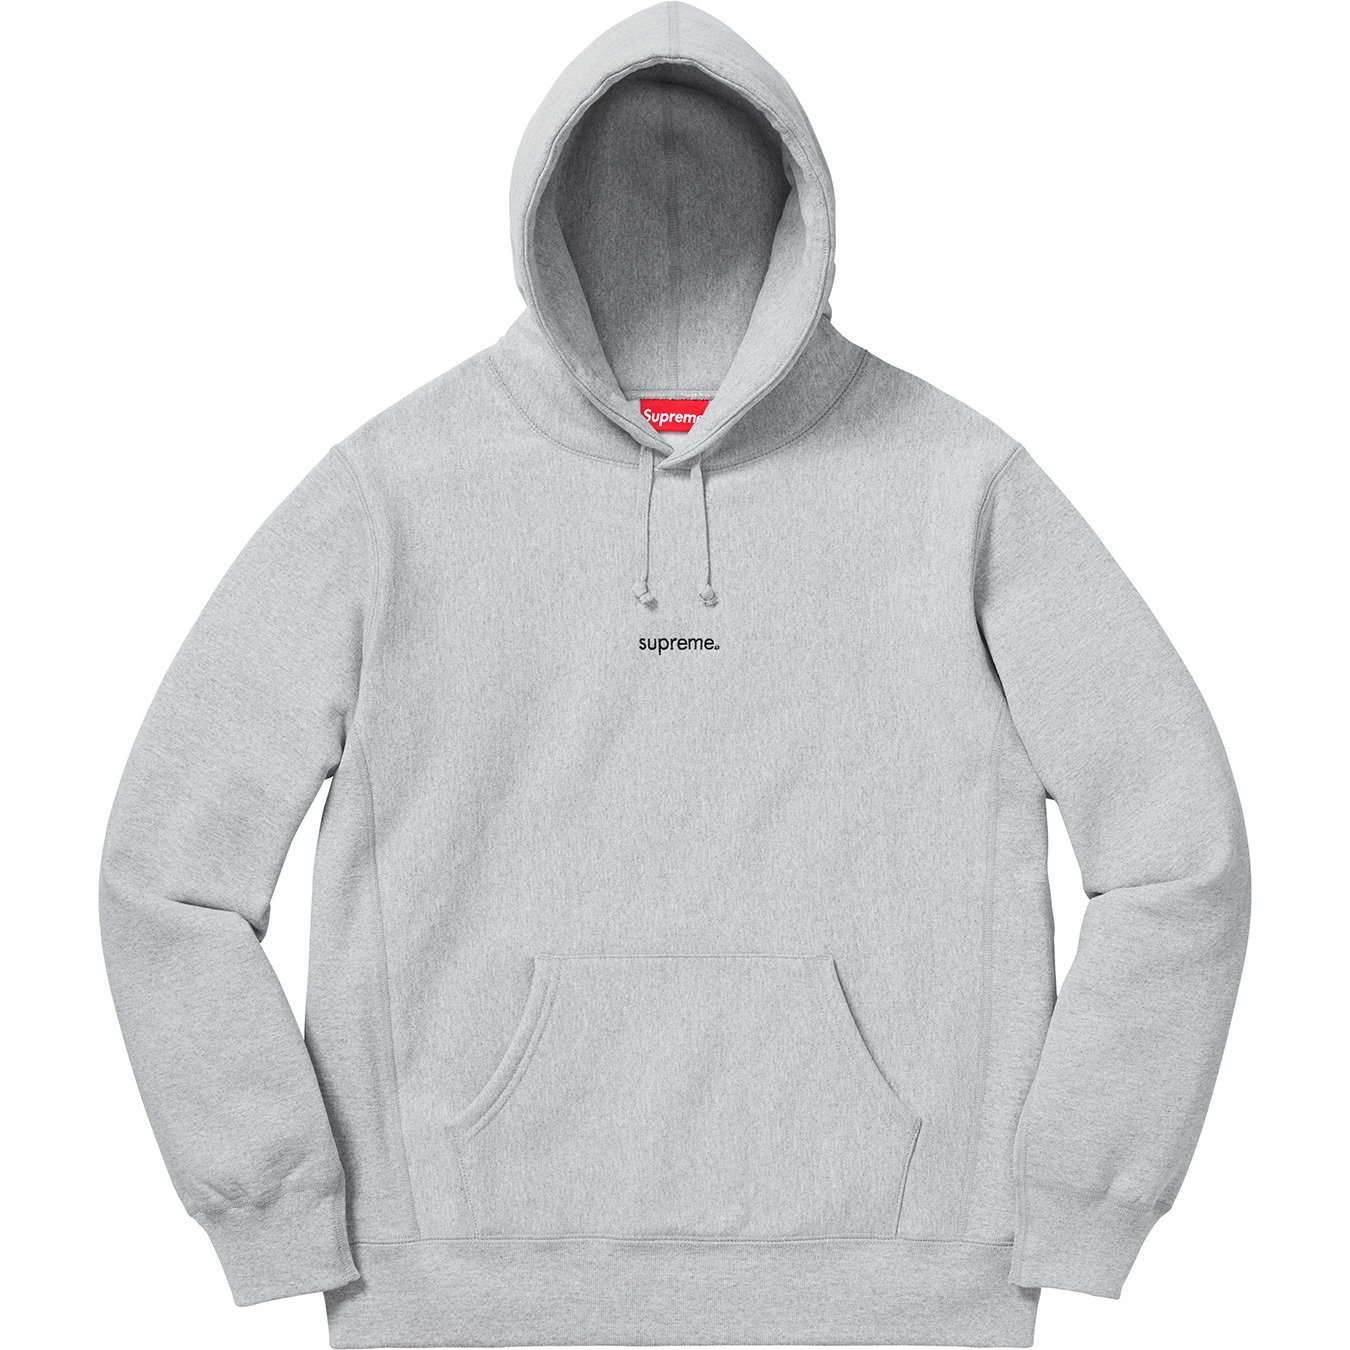 supreme Trademark Hooded Sweatshirt 18AW